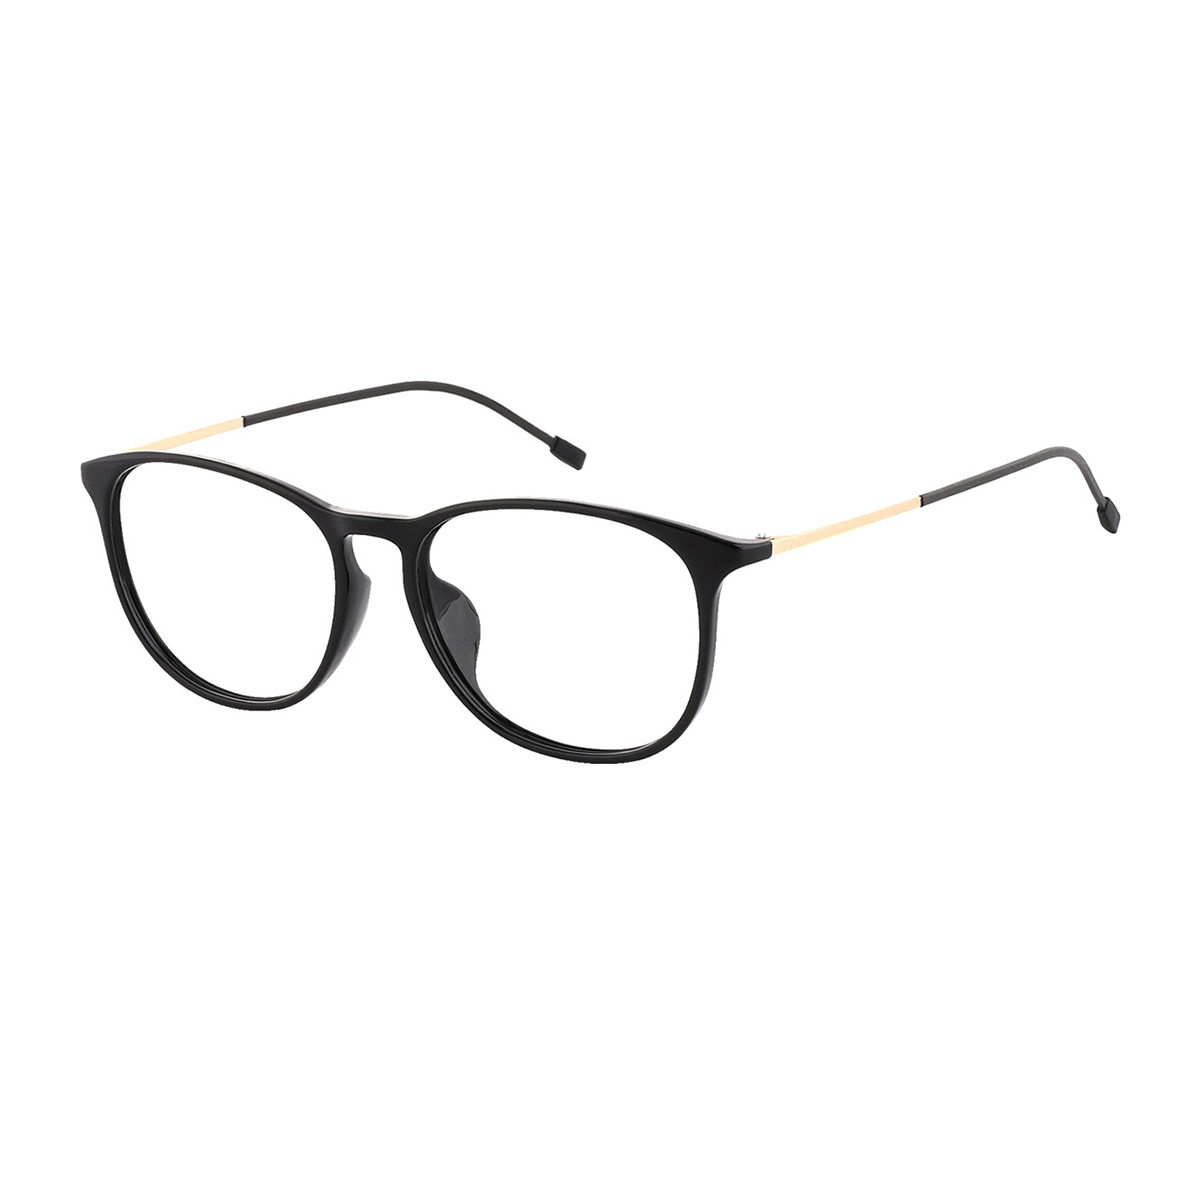 Lee - Oval Black-Gold Reading Glasses for Men & Women